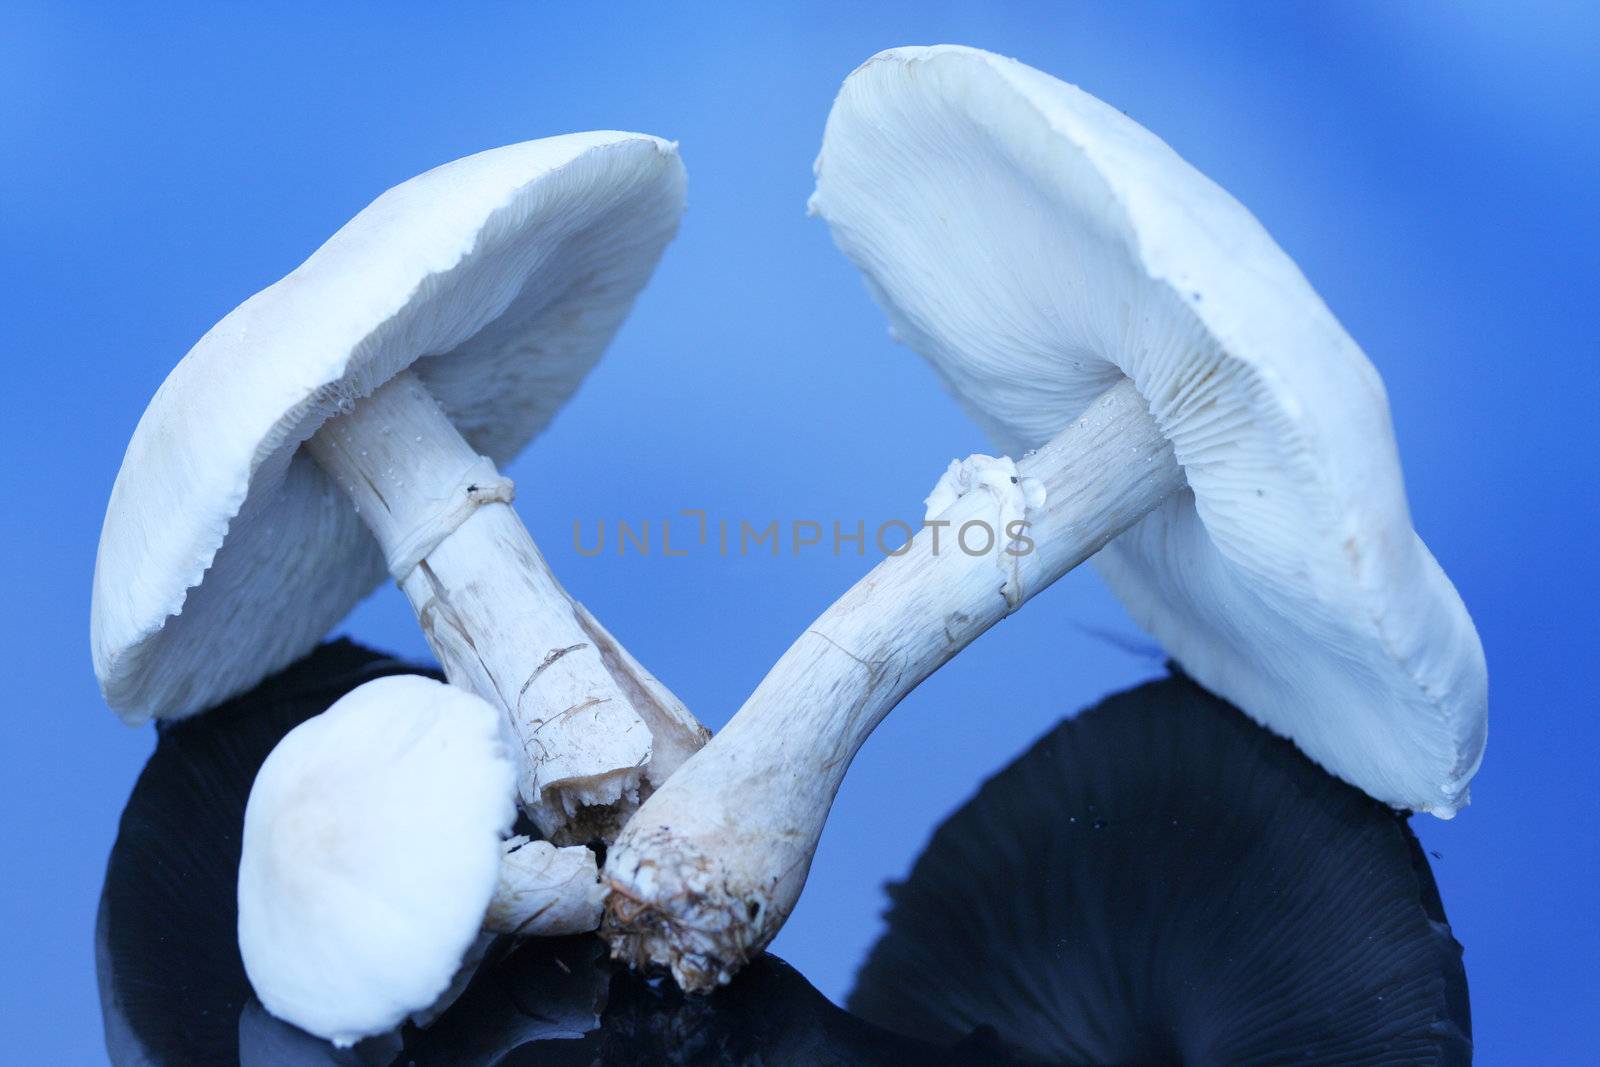 Large white mushroom on reflective surface.;